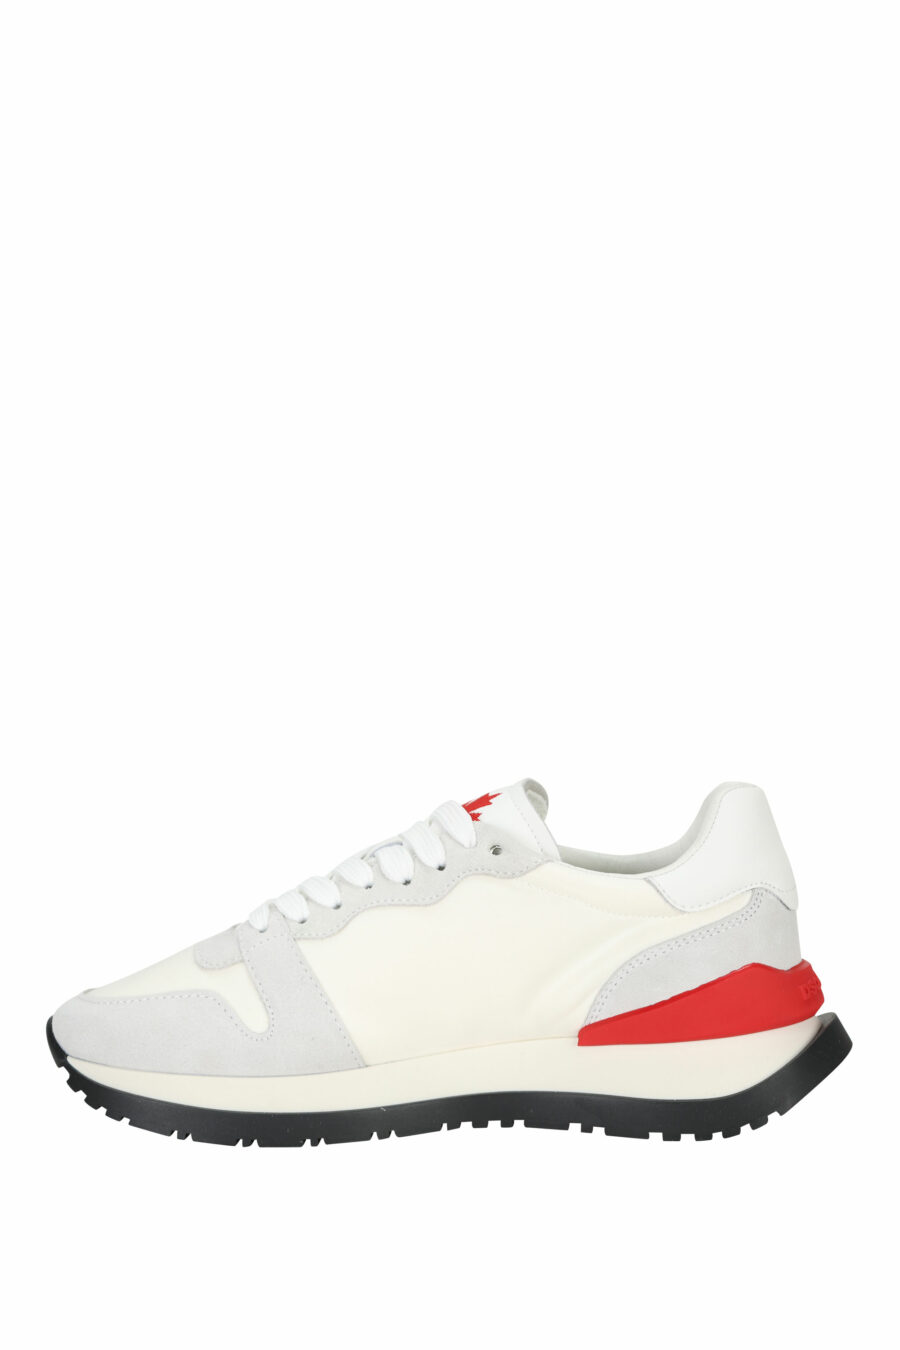 Zapatillas blancas mix con rojo y minilogo "icon" - 8055777303870 2